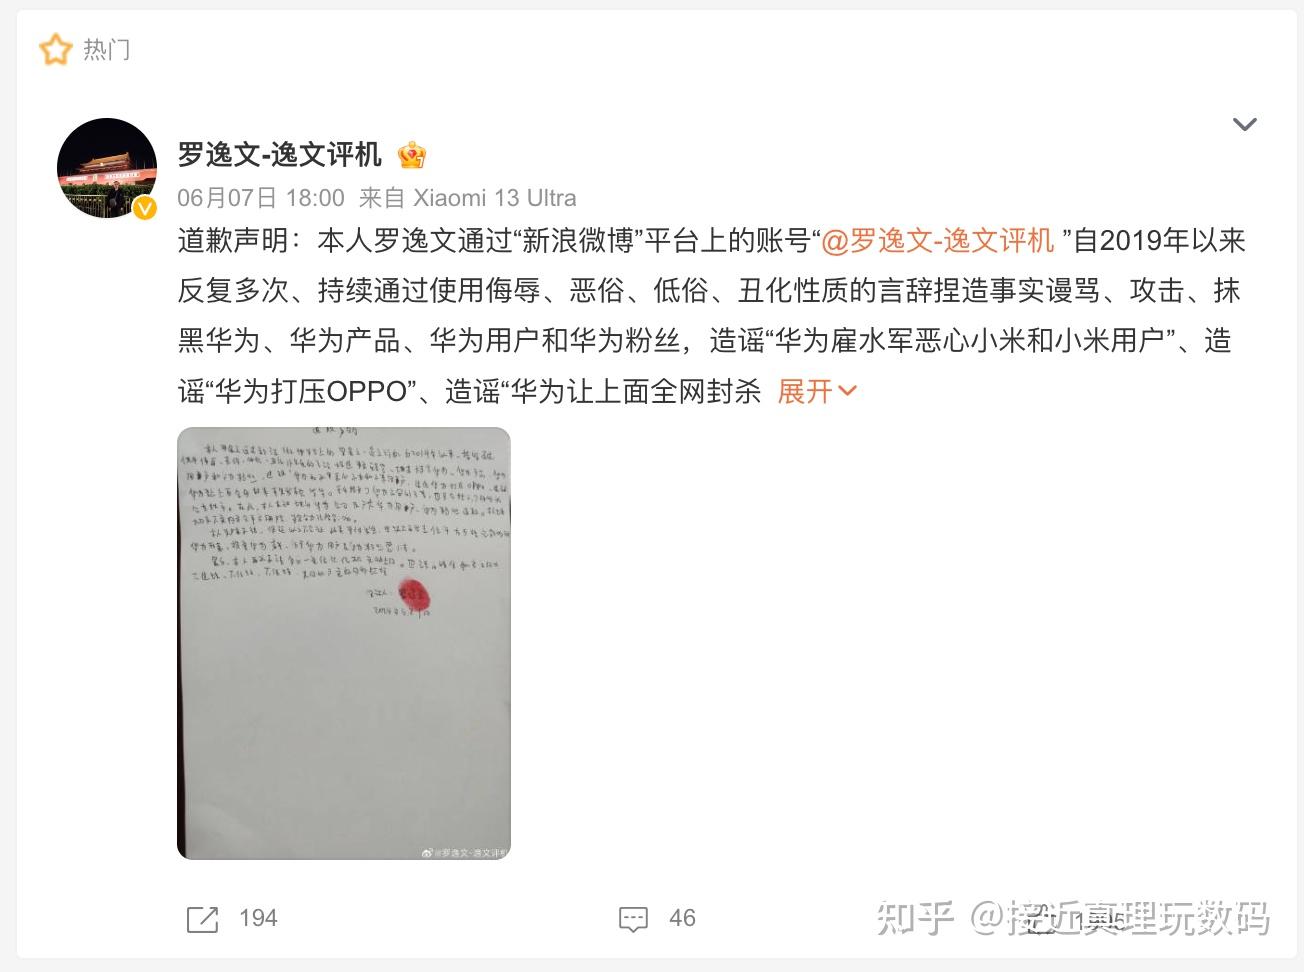 微博大v罗逸文向华为正式道歉,自媒体人更要守住道德红线